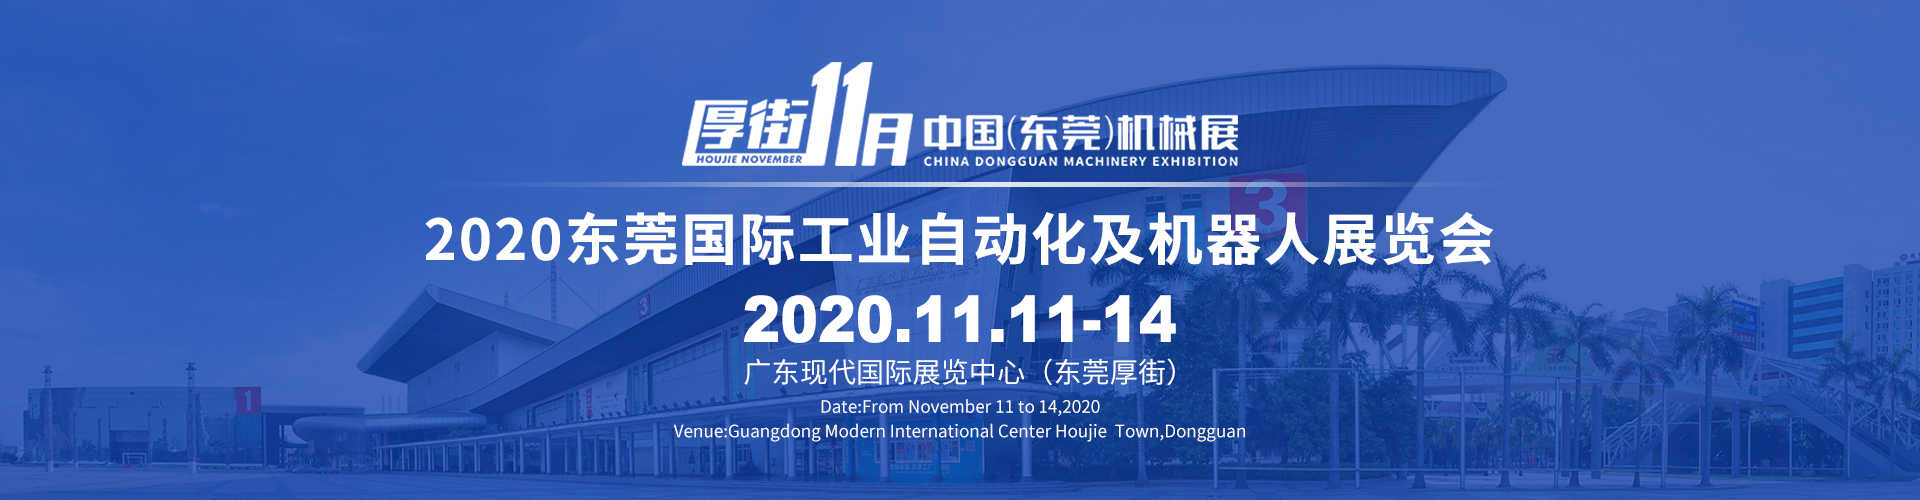 2020东莞机械展暨东莞智能工厂展览会